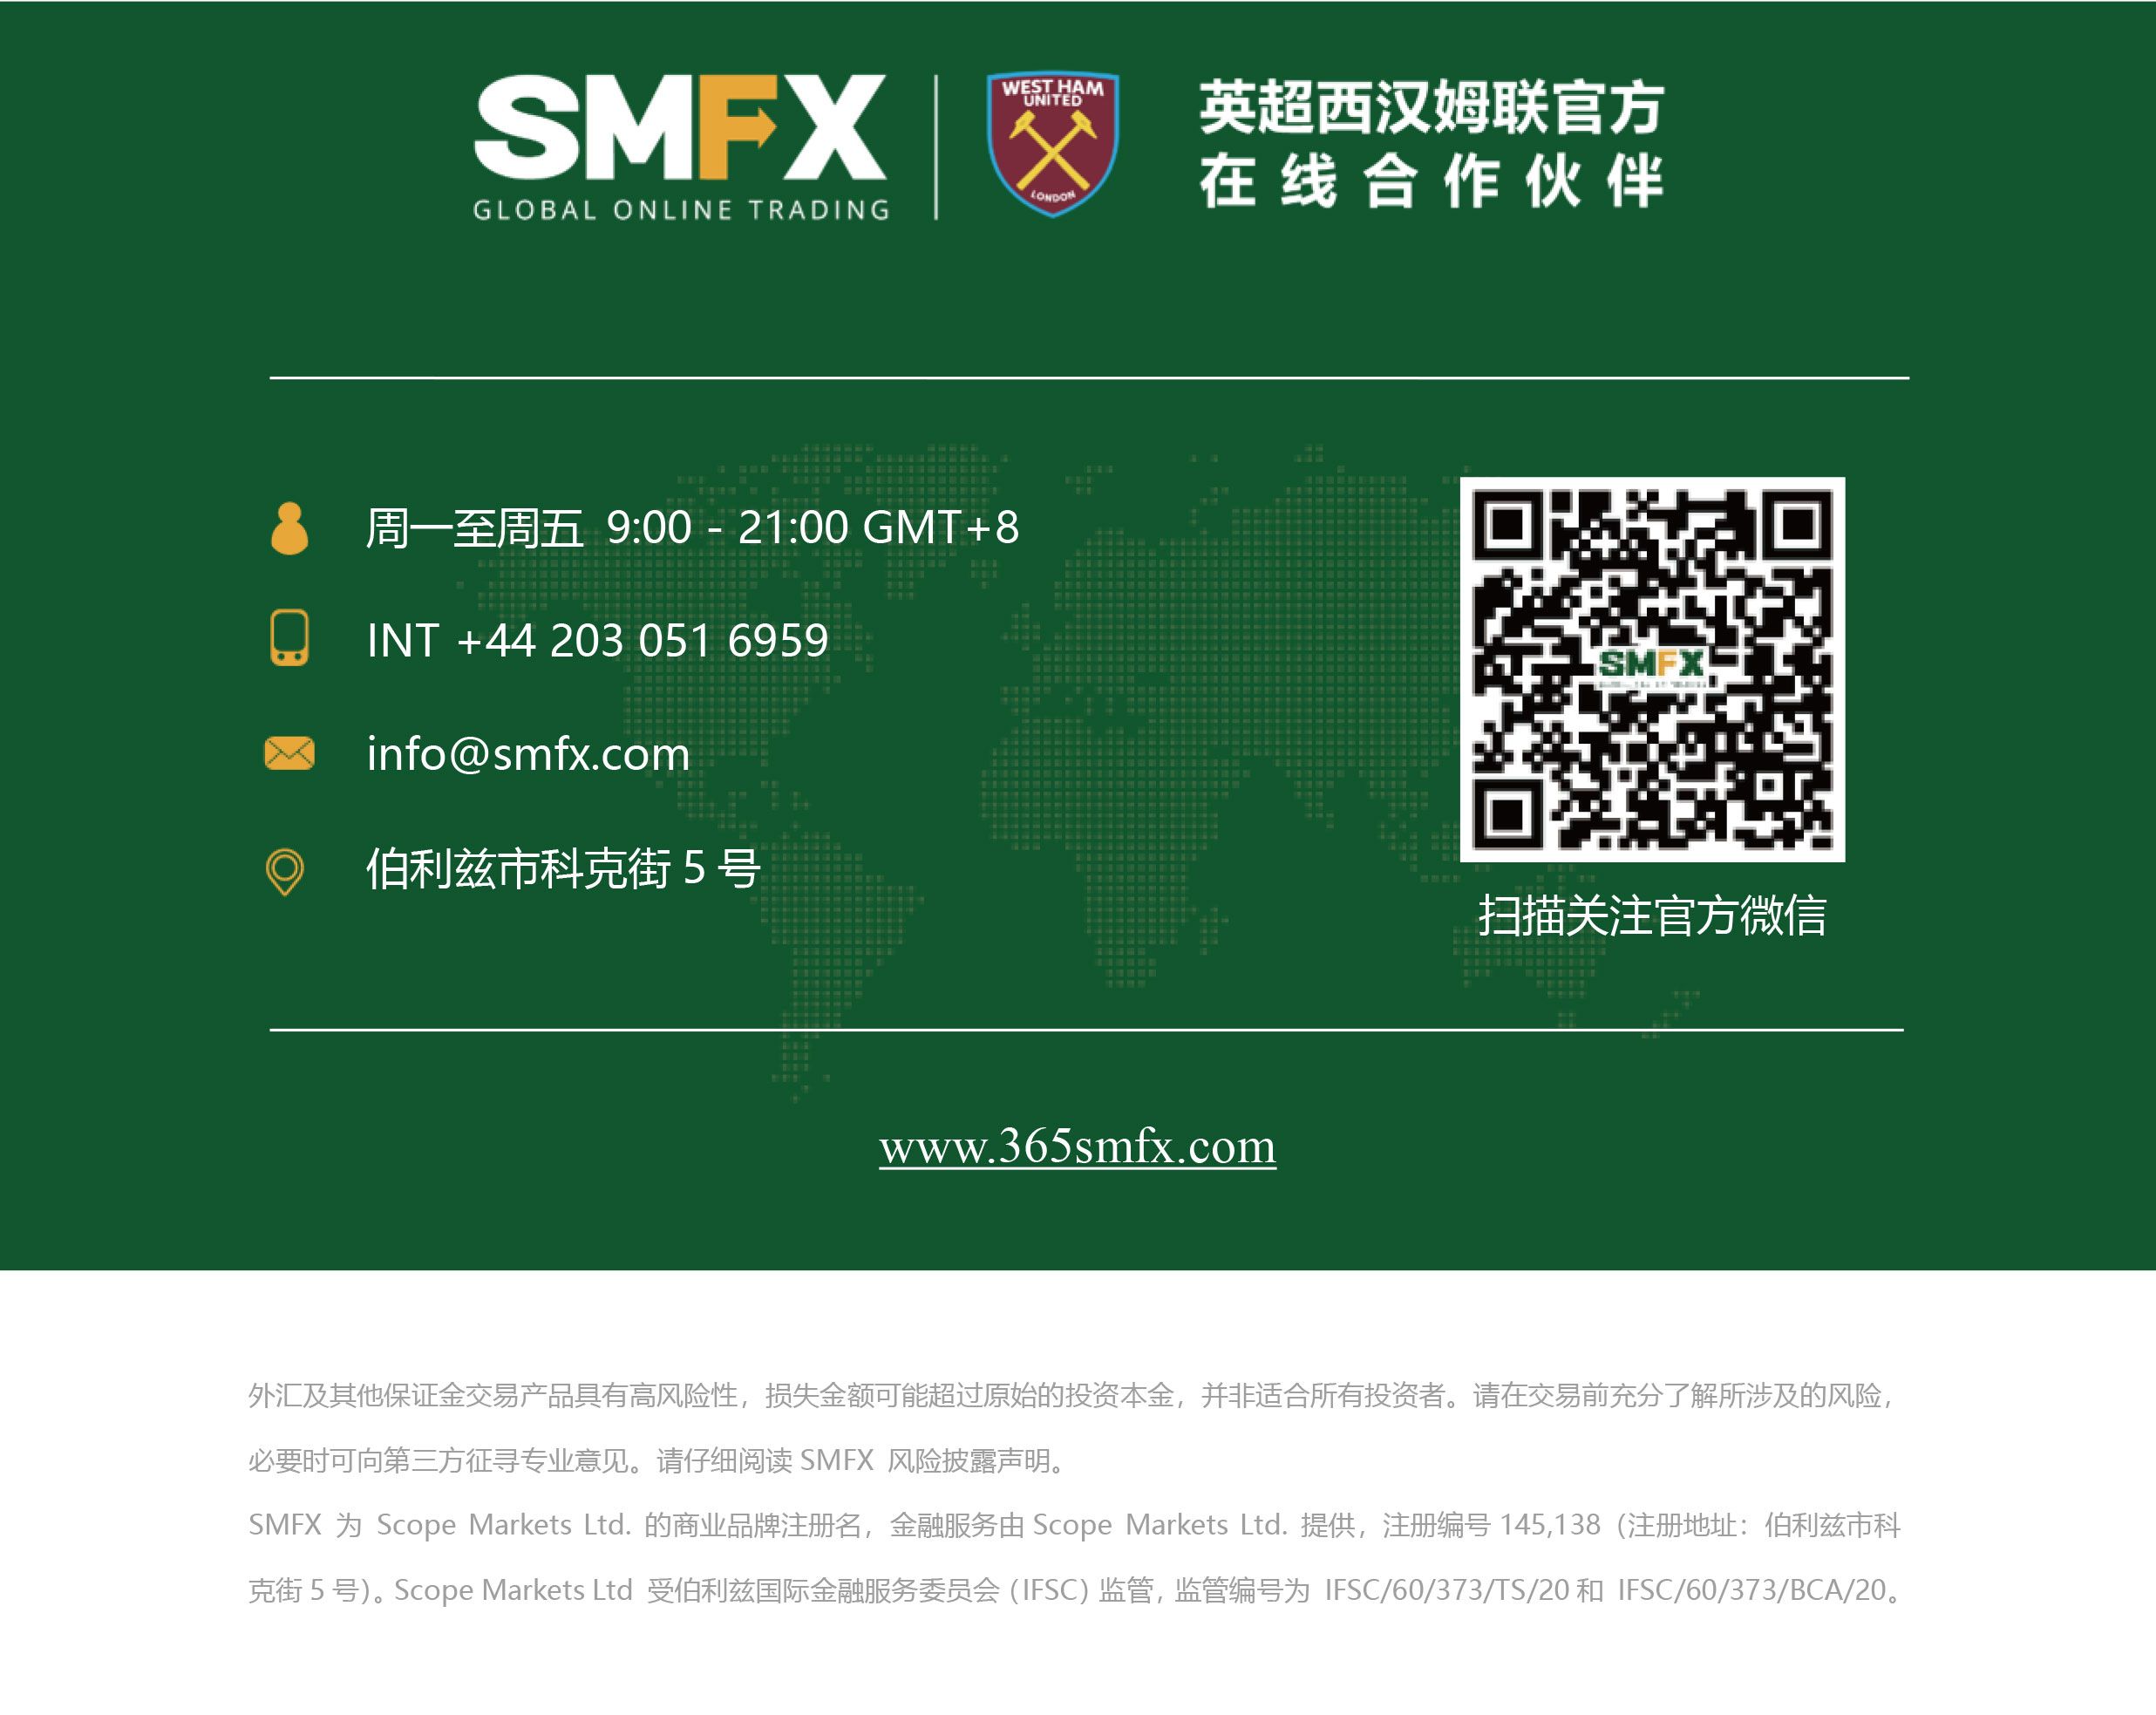 SMFX【市场晚评】2020.09.25丨市场风险情绪缓解 金油走出下跌阴霾